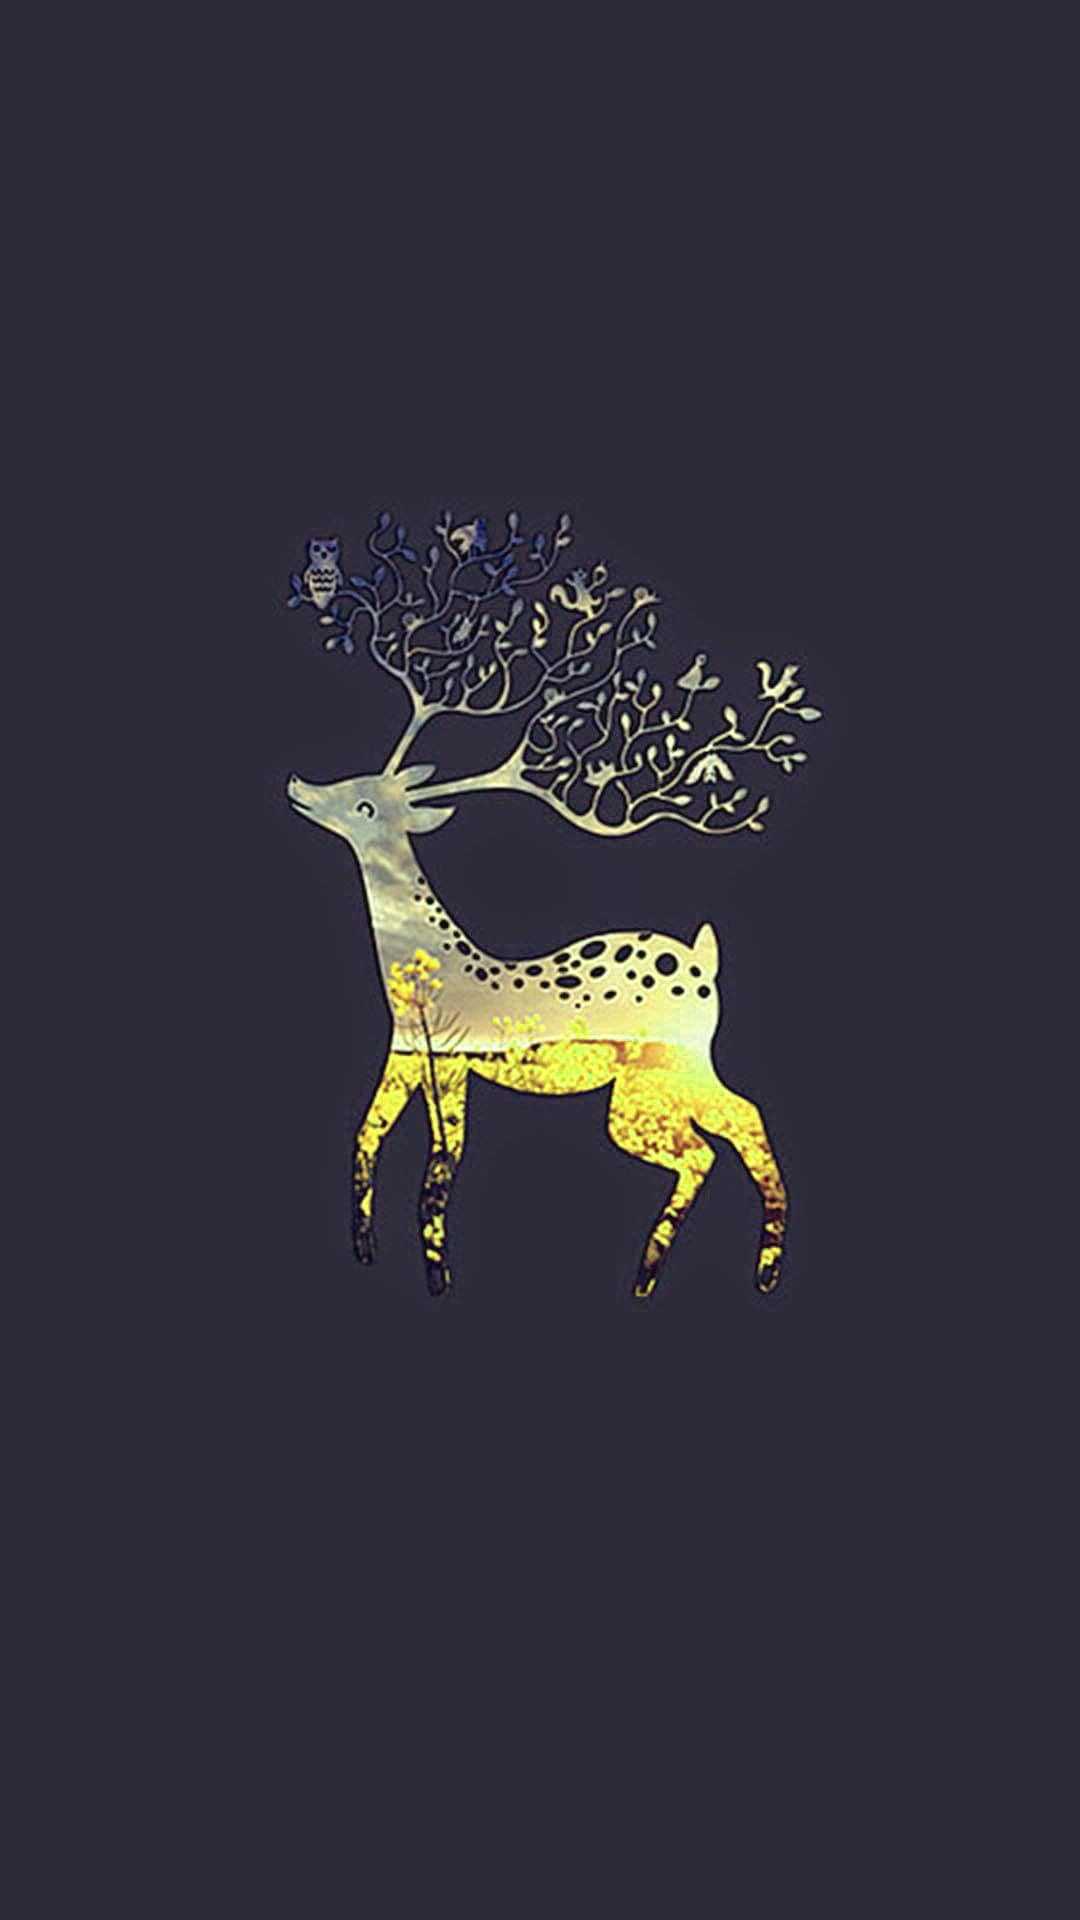 Golden deer with a tree wallpaper - Deer